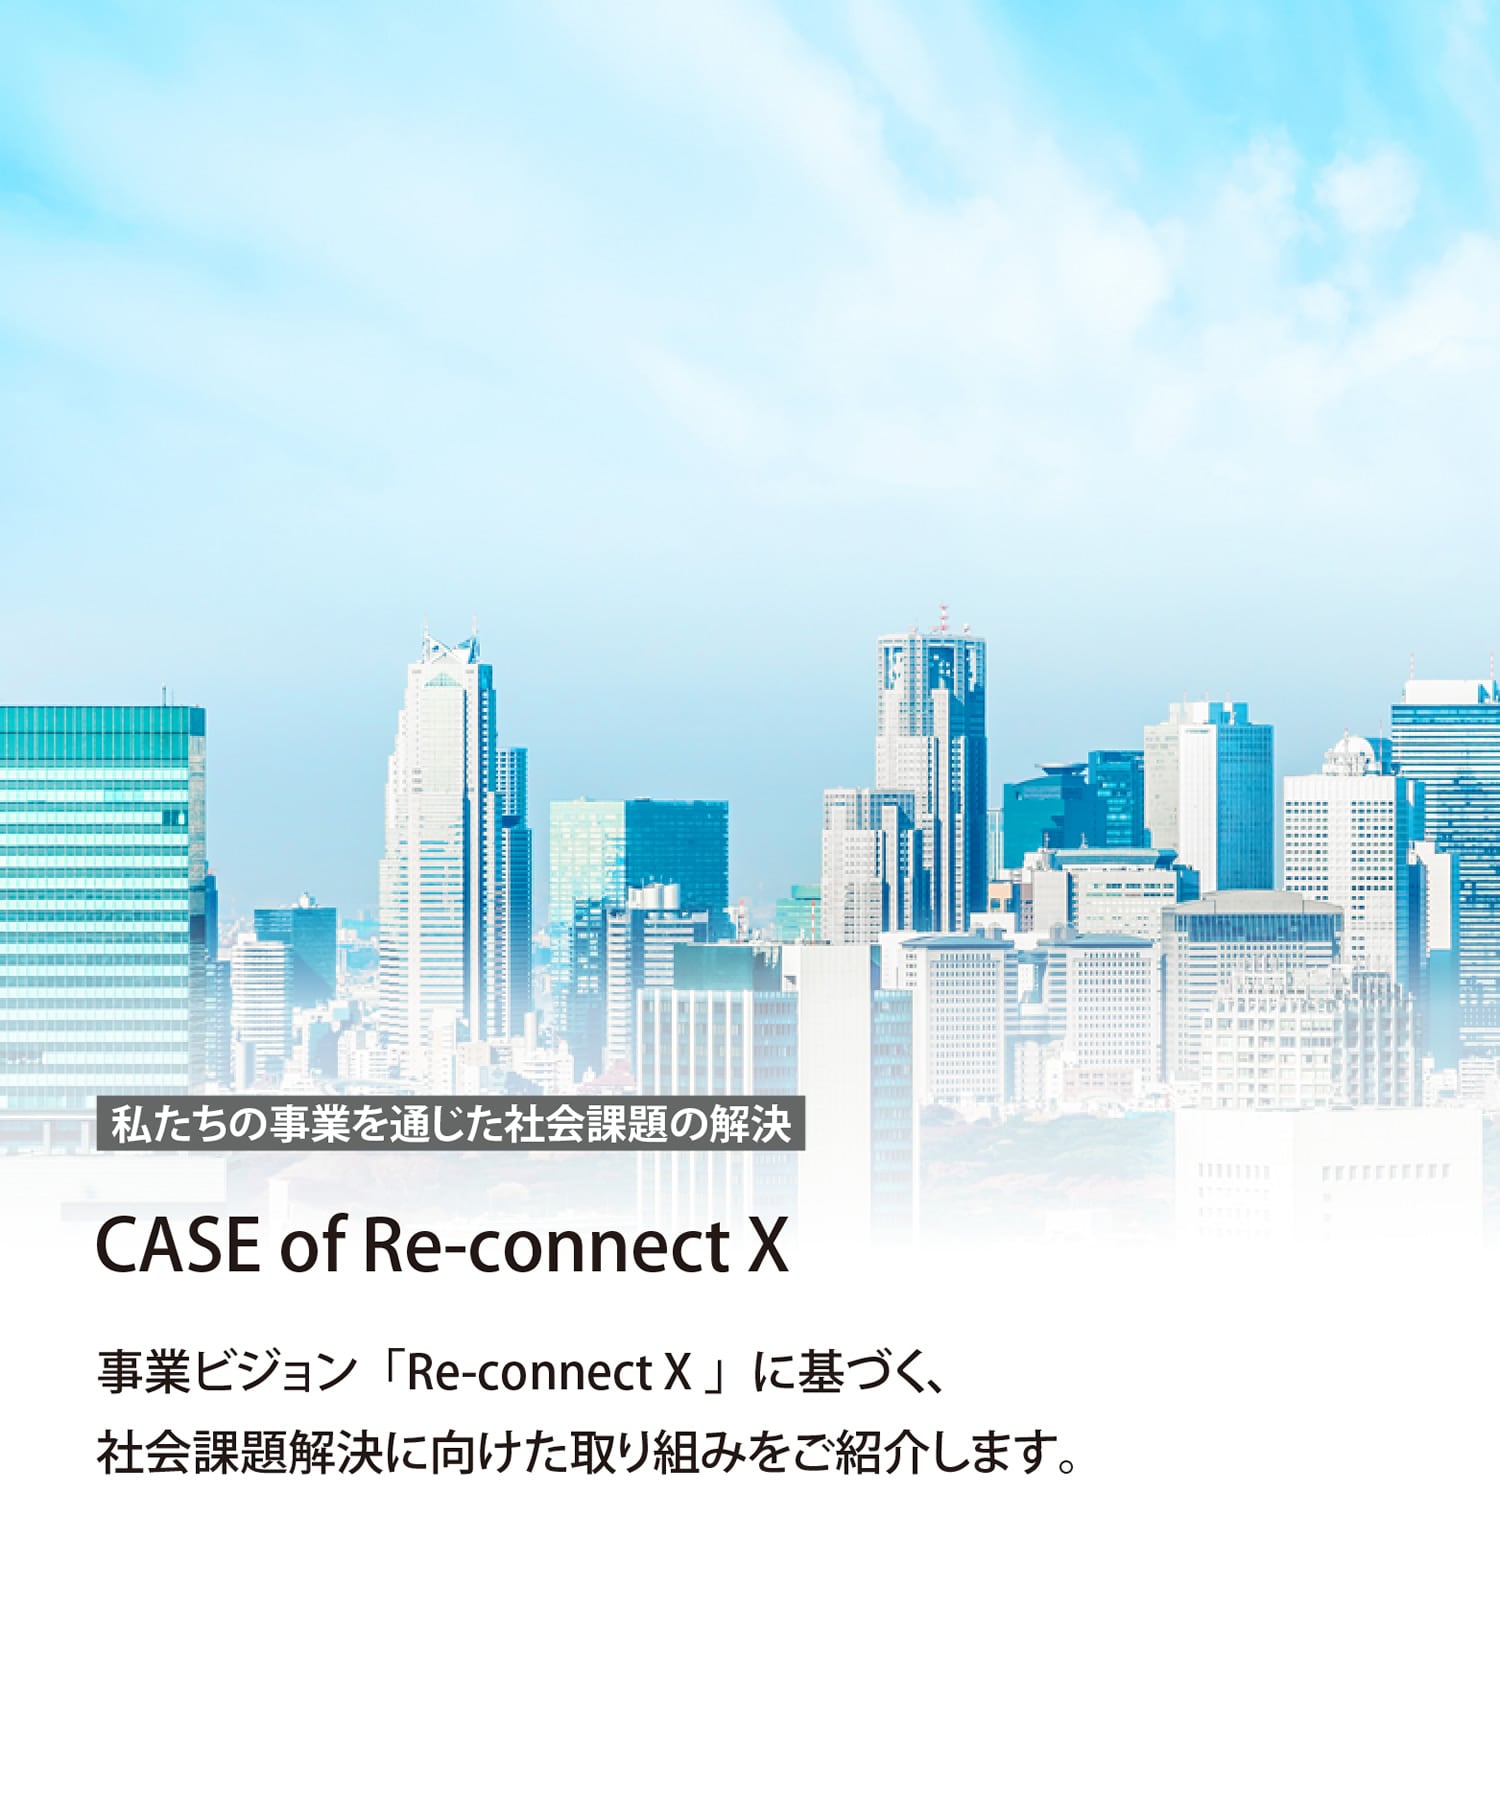 CASE Re-connect X